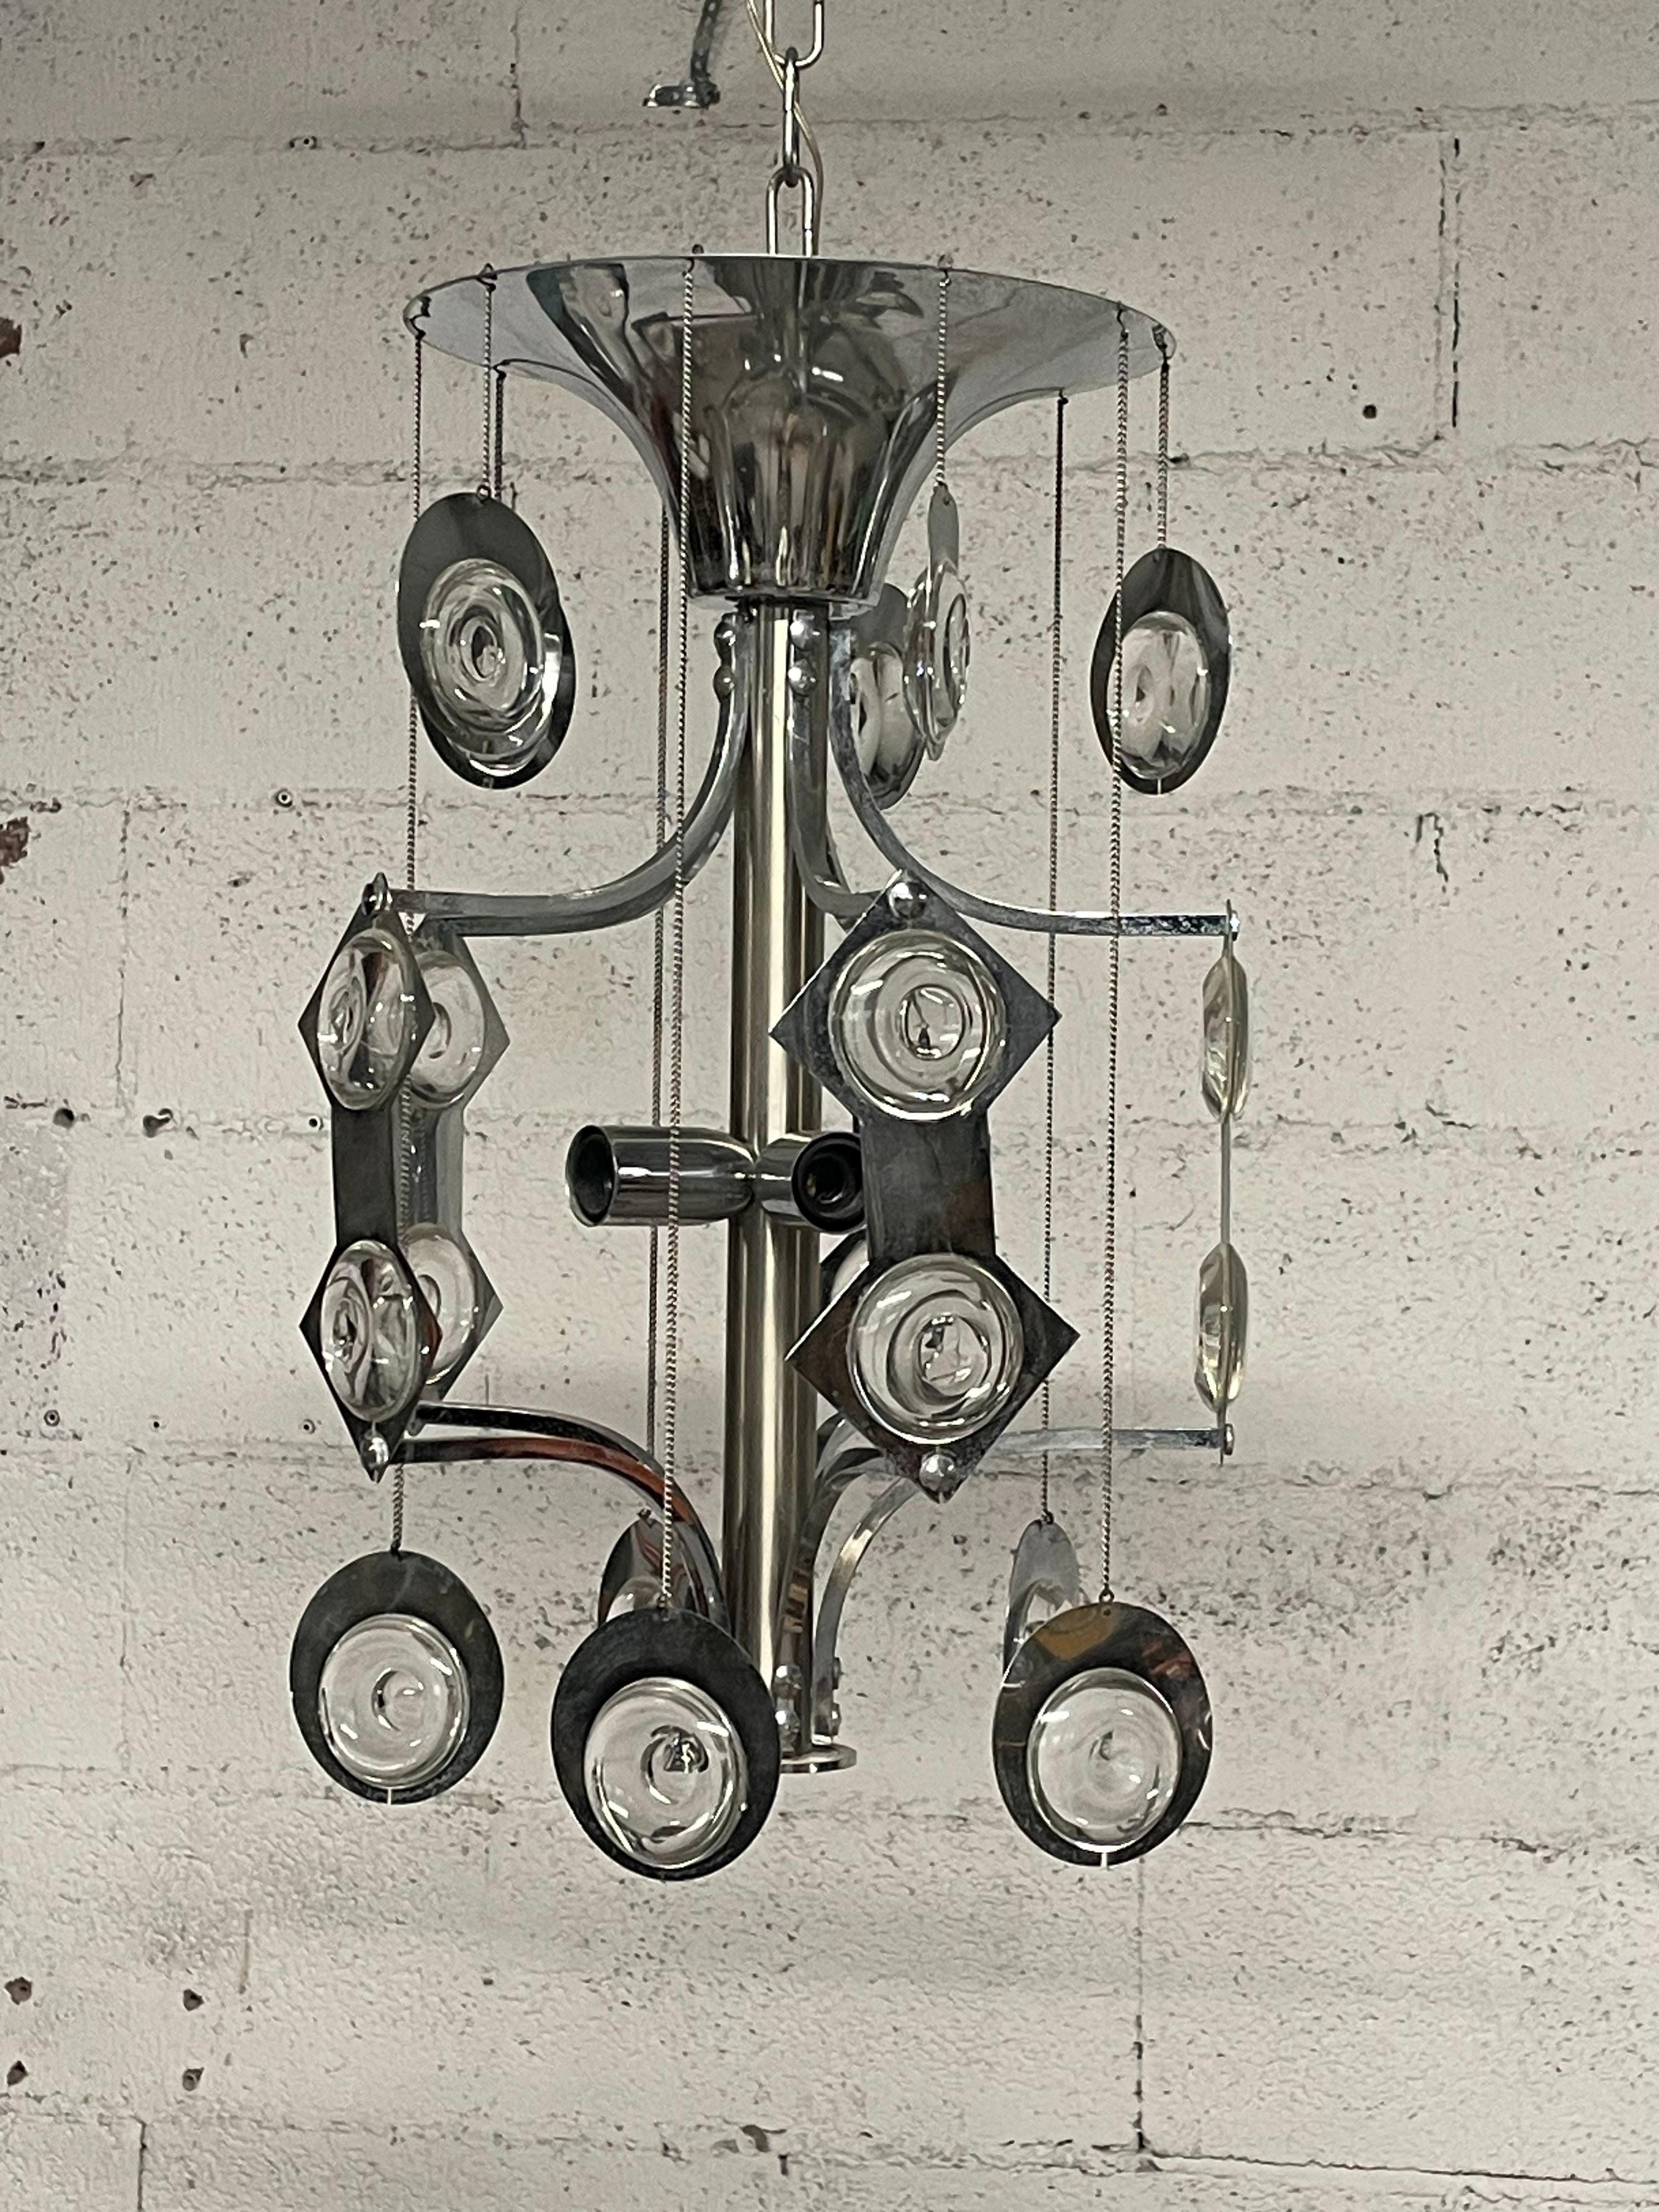 Rare lampe suspendue dessinée par Oscar Torlasco dans les années 1970 et produite par Esperia, une entreprise toscane qui fabrique des lampes à incandescence  l'éclairage décoratif haut de gamme.
Oscar Torlasco (Rome, 1934-2004) était un designer